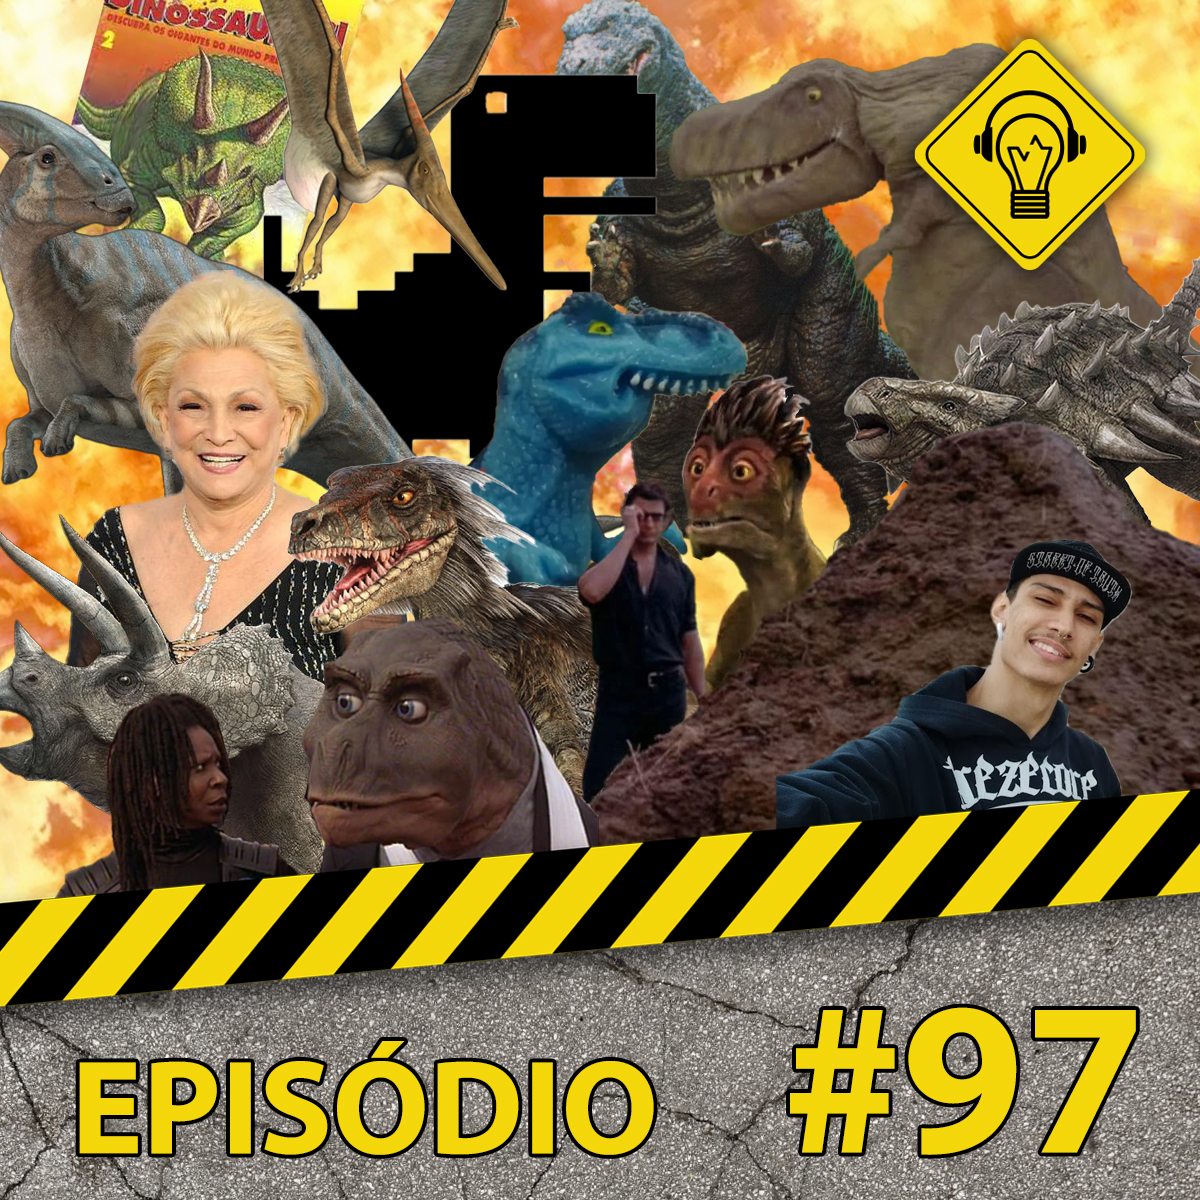 Podcast Ideia Errada #97 Dinossauros!